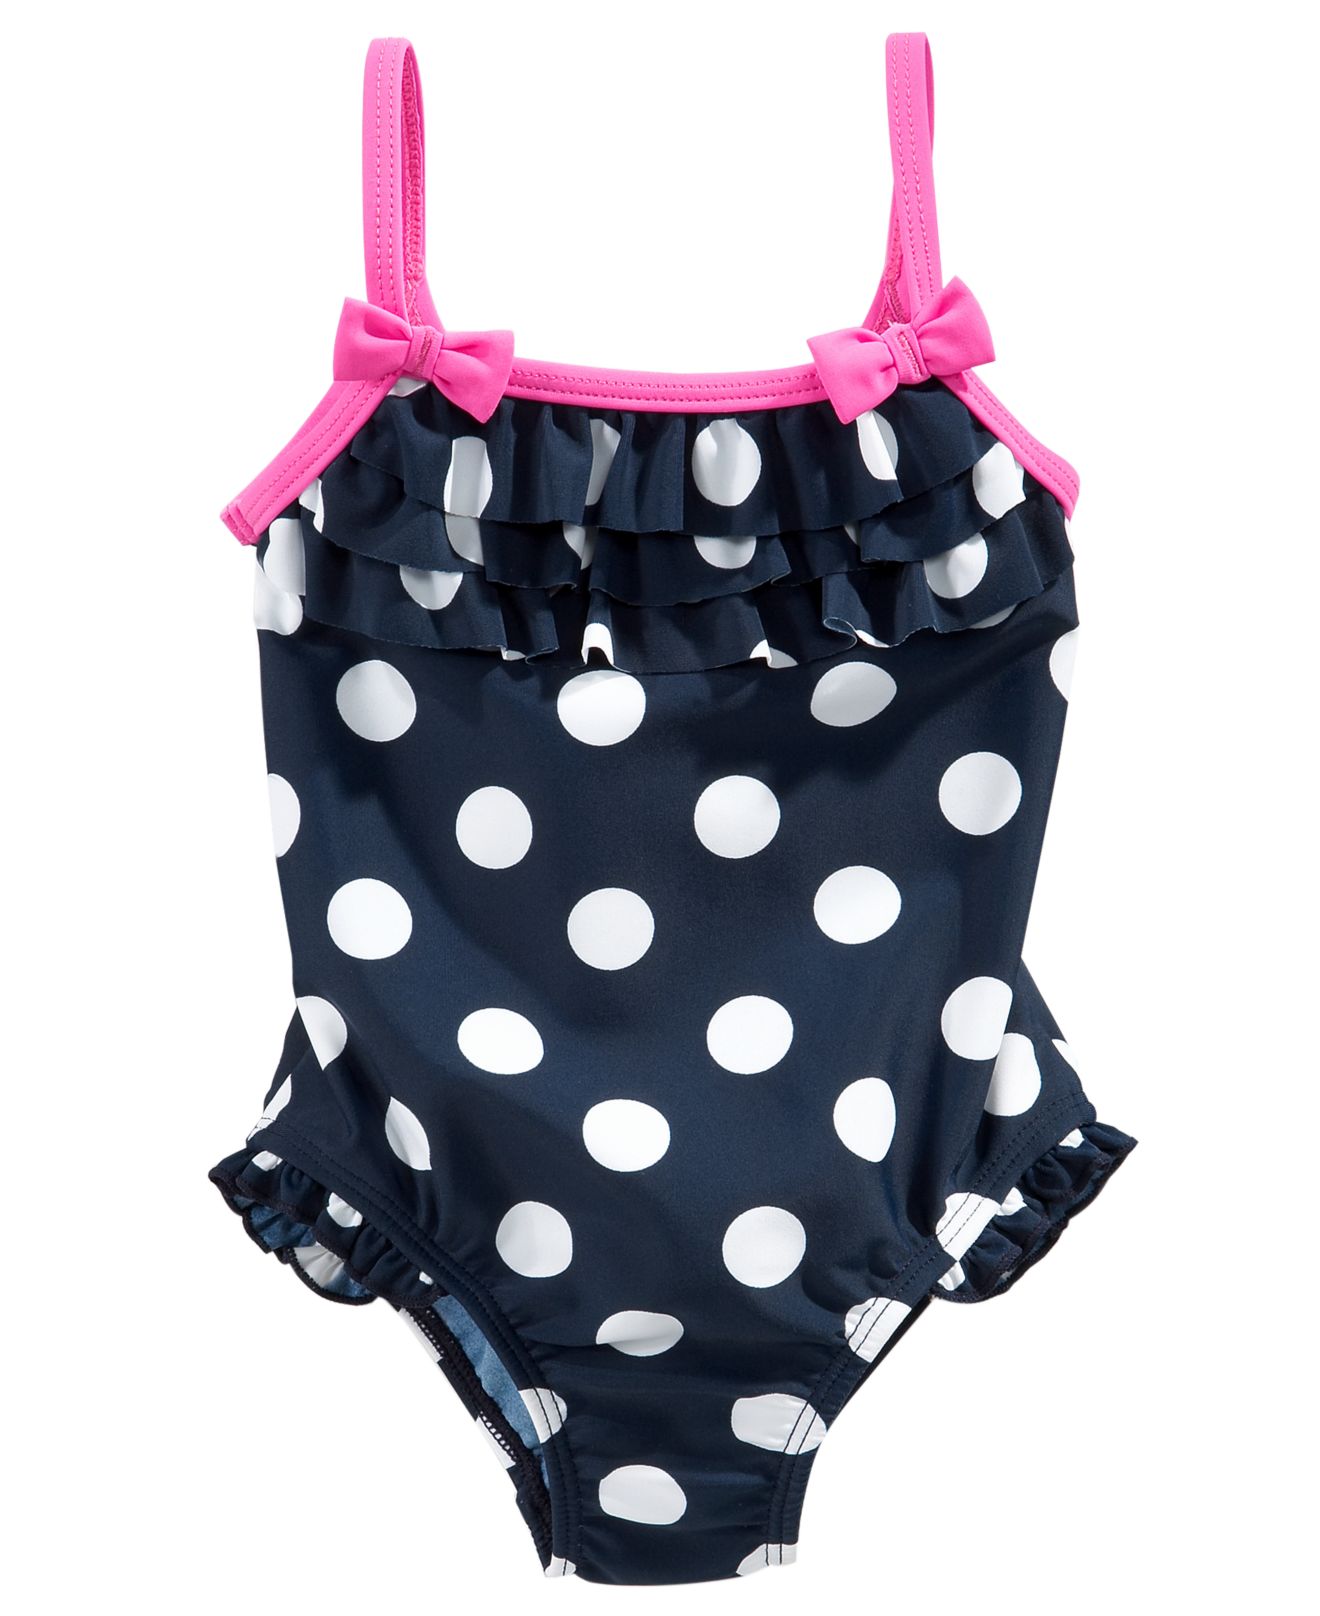 Baby Swimsuits carteru0027s baby swimsuit, baby girls polka dot ruffle swimsuit - kids - macyu0027s RLTWLLD